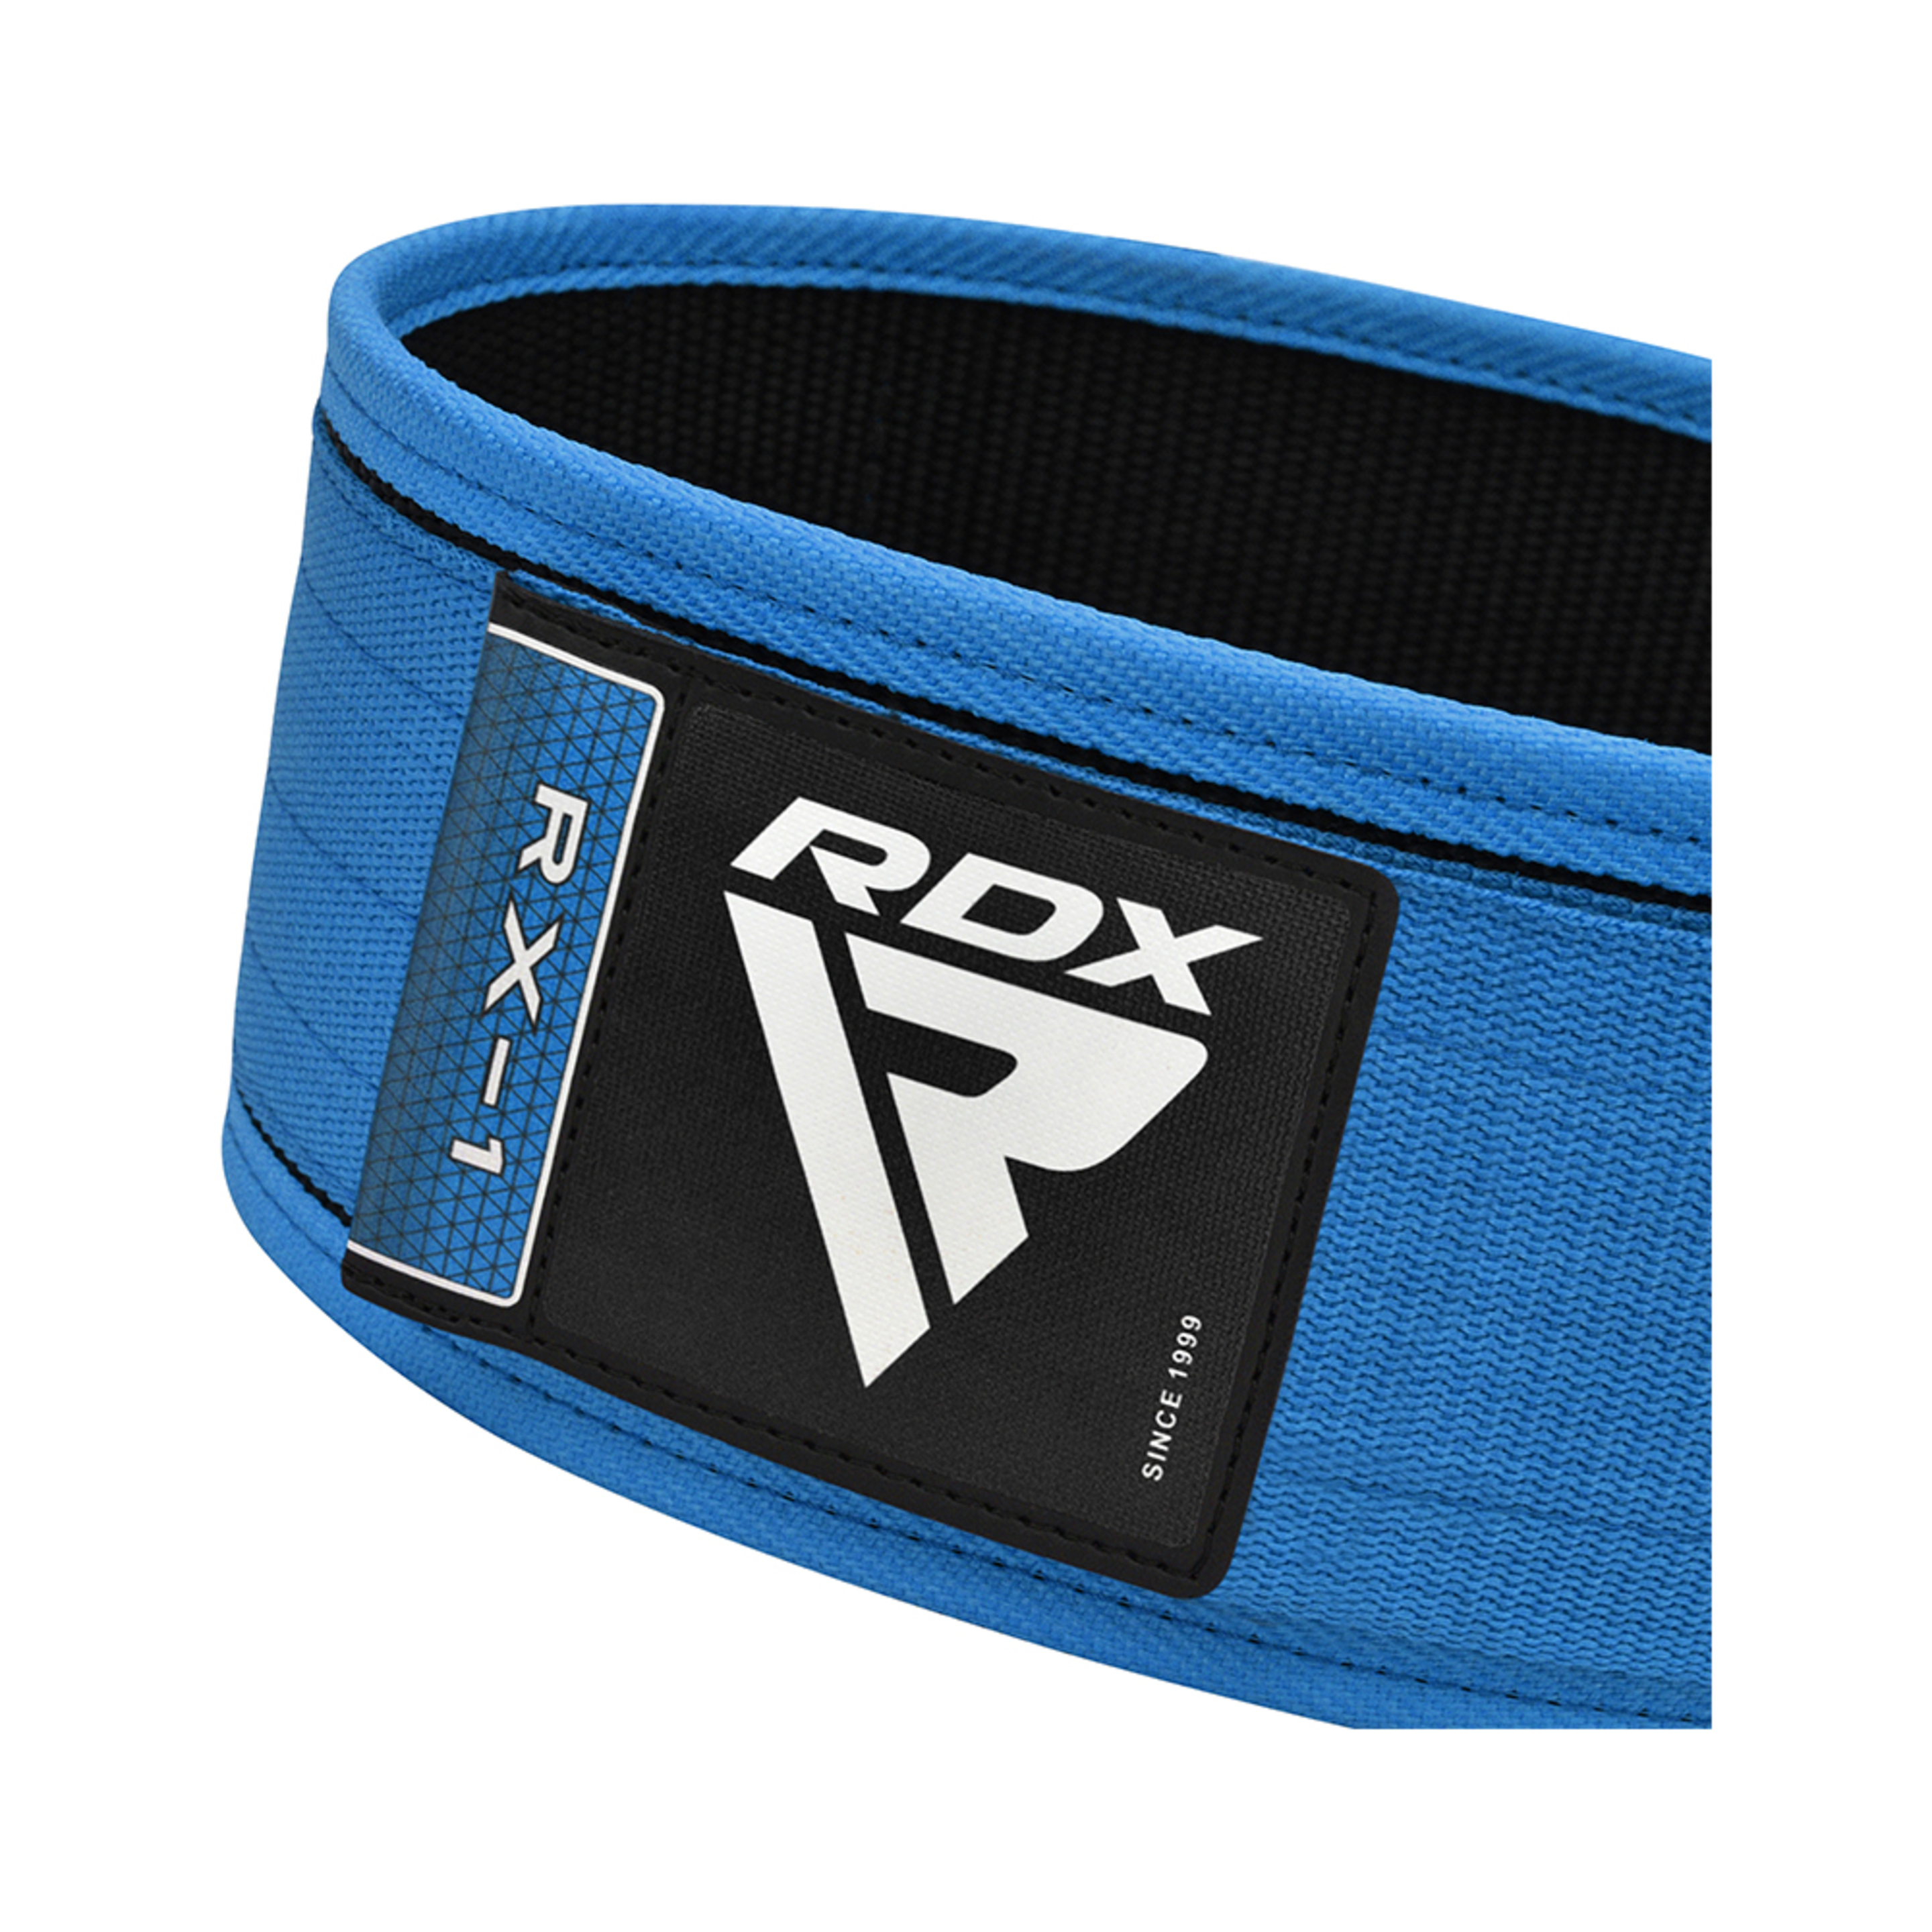 Cinturón De Fitness Rdx Wbs-rx1 - Azul - Weightlifting Powerlifting Fitness  MKP